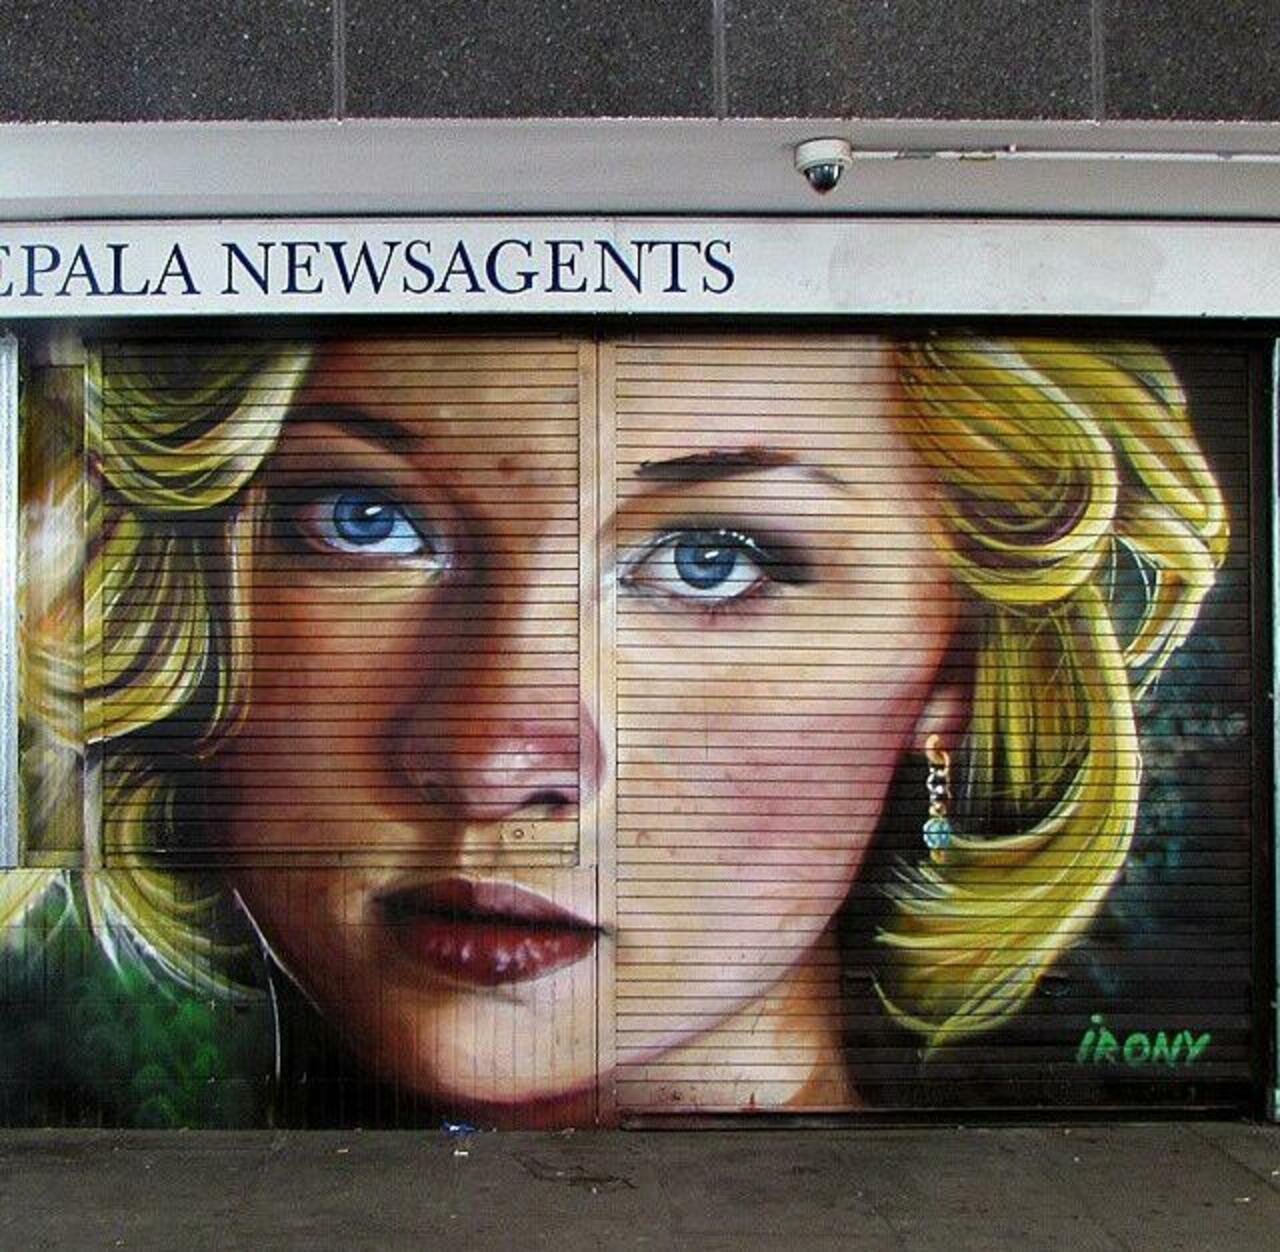 Street Art portrait by whoamirony in Islington, London 

#art #arte #graffiti #streetart http://t.co/AVMsWND46x